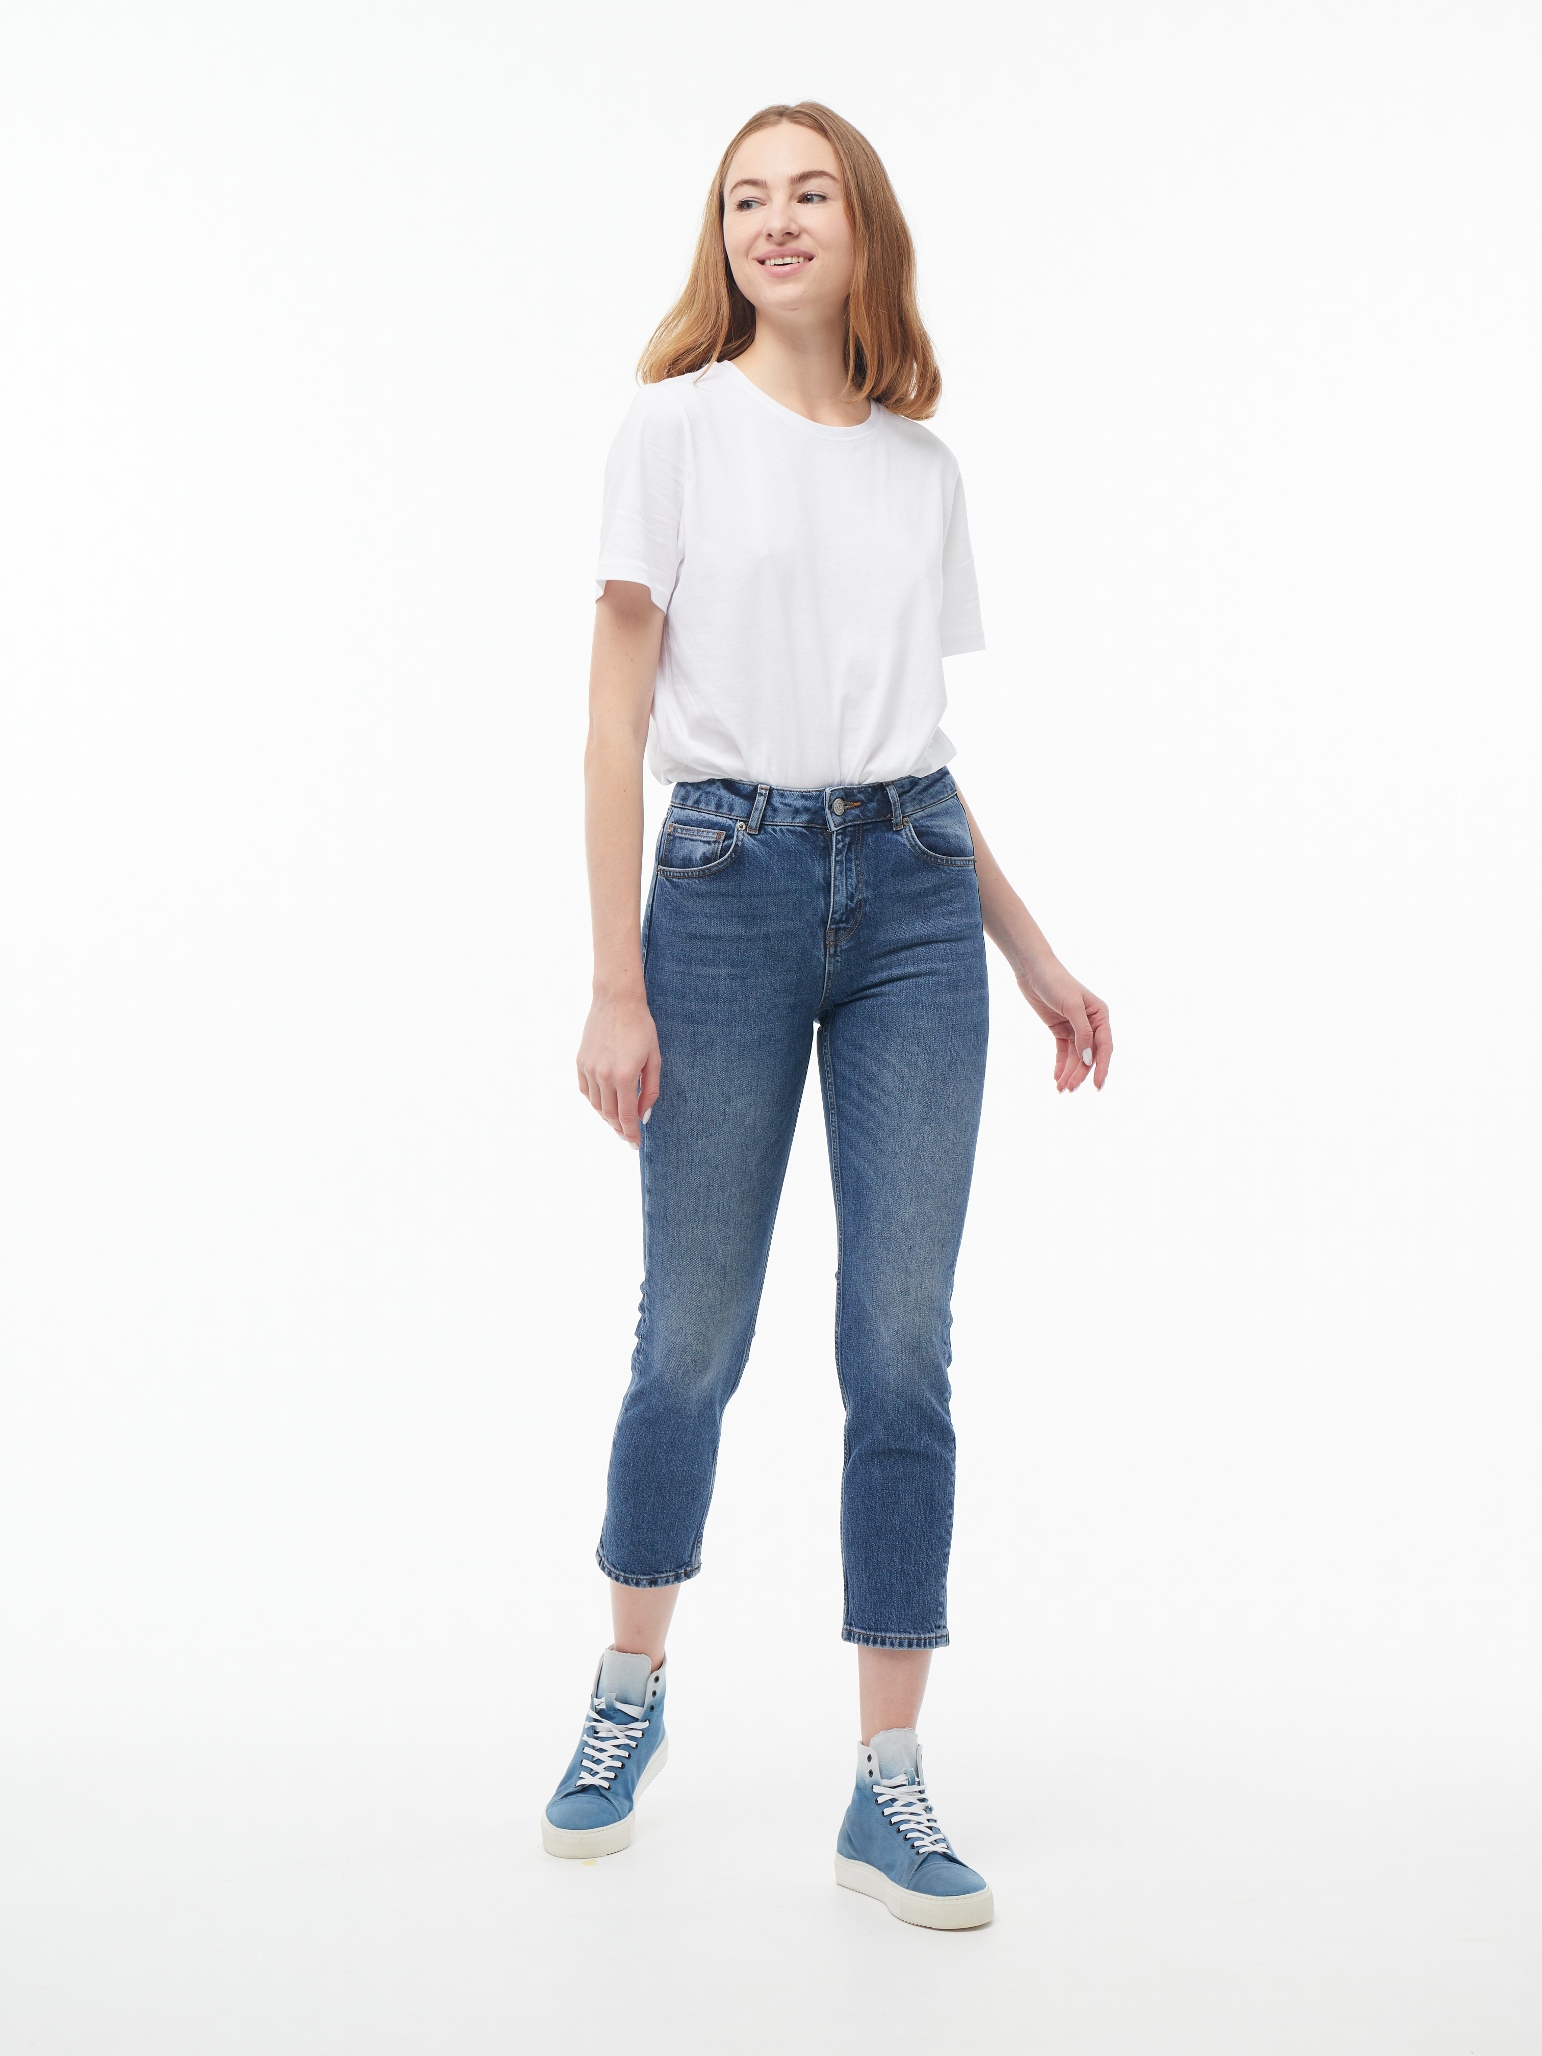 Жіночі джинси Mom Slim Fit  ASA 1071 | Women's Jeans Mom Slim Fit  ASA 1071